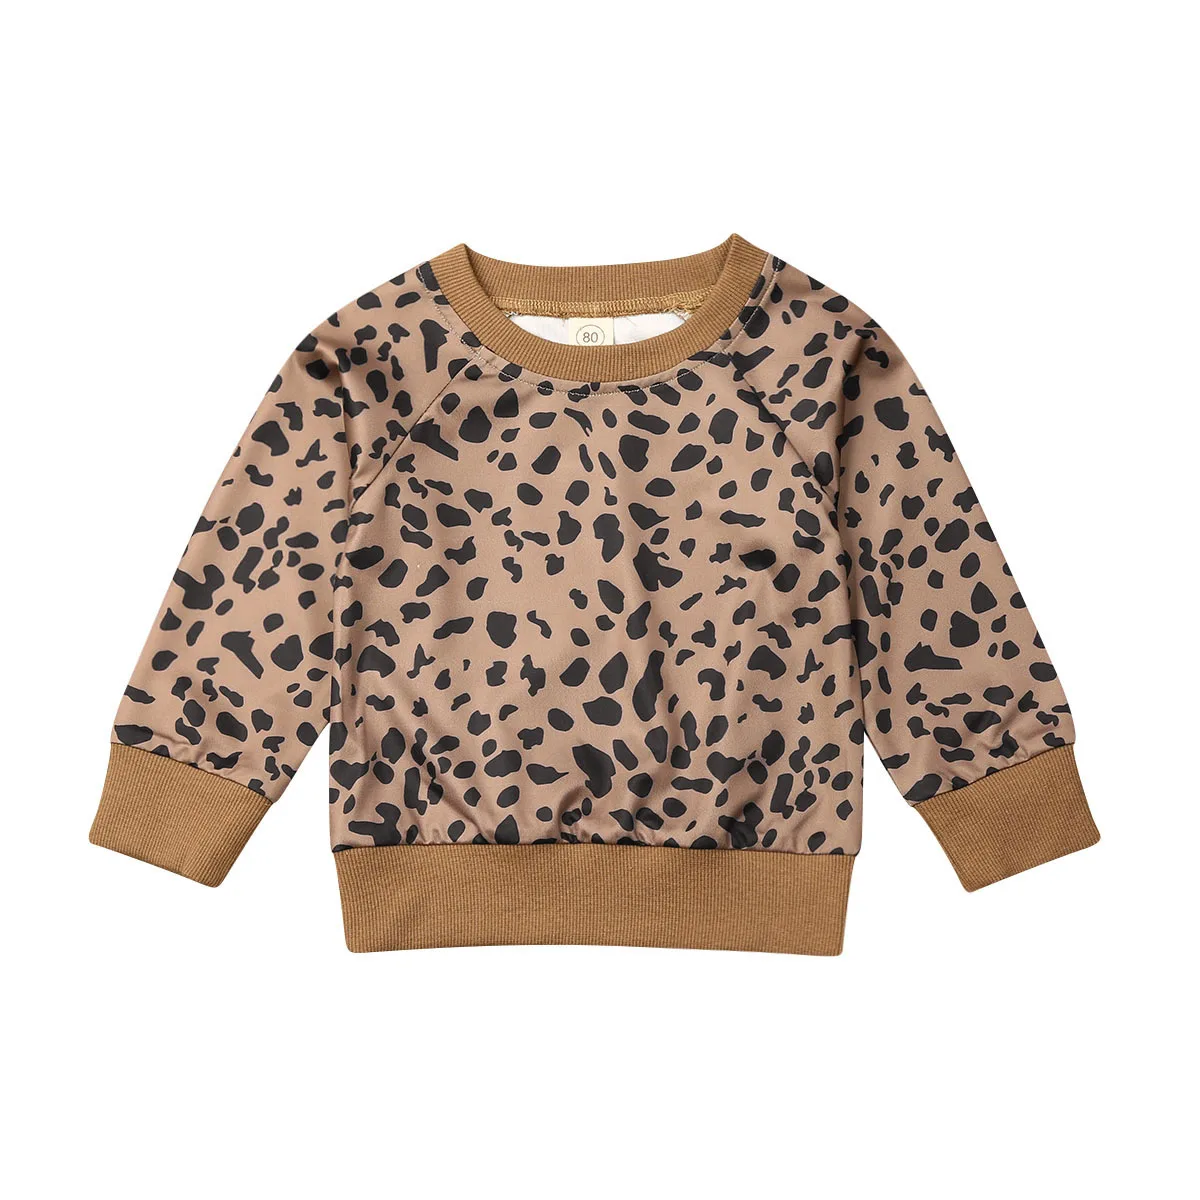 Леопардовая рубашка с длинными рукавами и круглым вырезом для новорожденных девочек, блузка, свитер, свитер, одежда